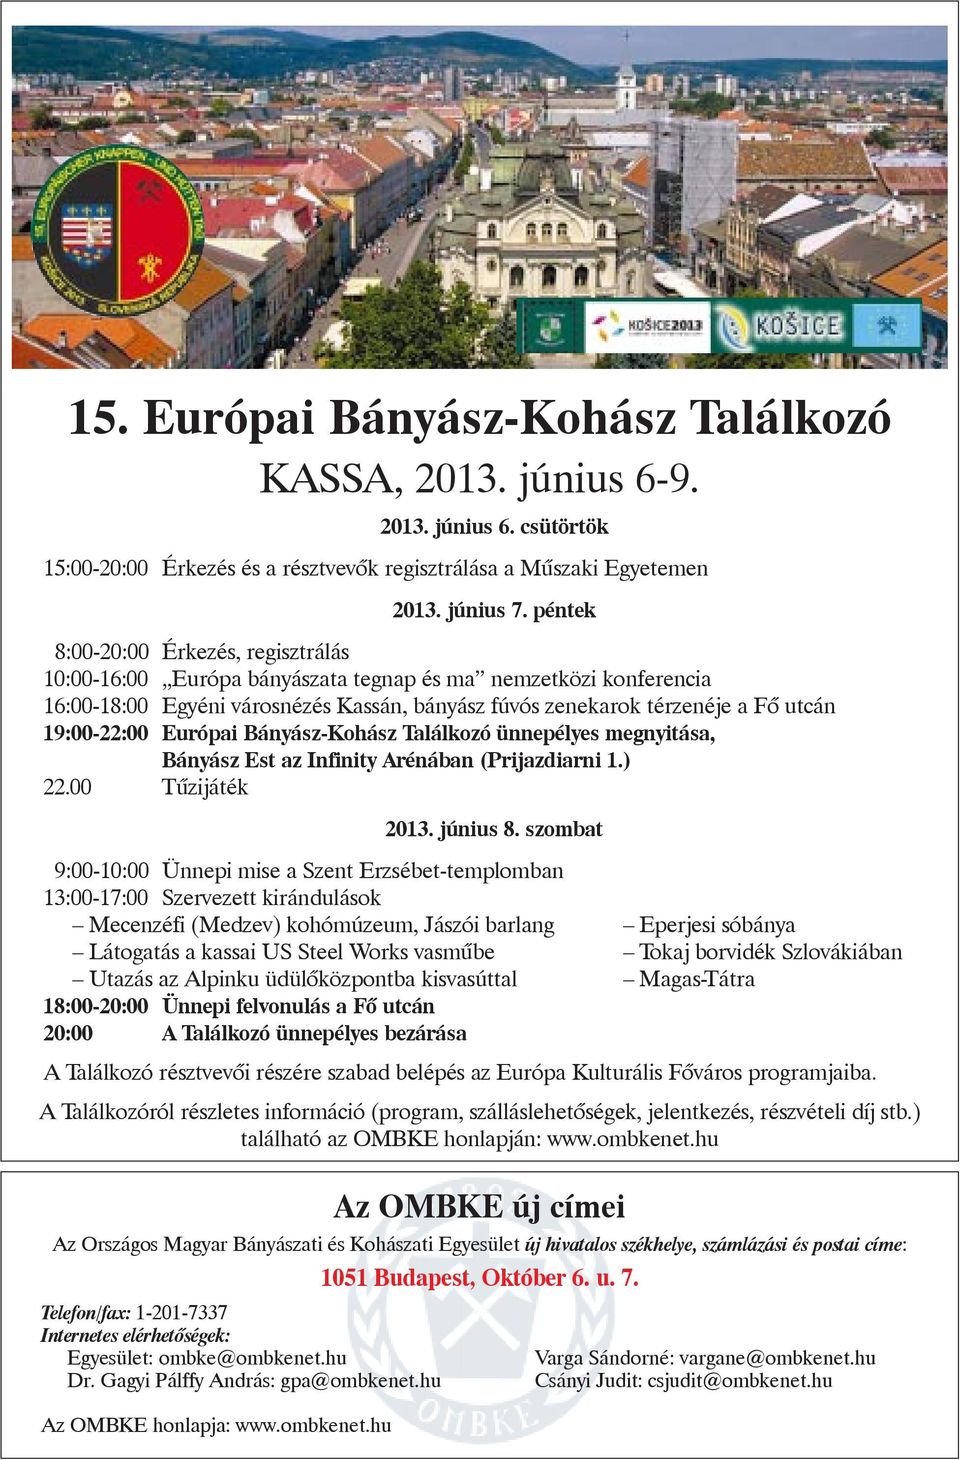 19:00-22:00 Európai Bányász-Kohász Találkozó ünnepélyes megnyitása, Bányász Est az Infinity Arénában (Prijazdiarni 1.) 22.00 Tûzijáték 2013. június 8.